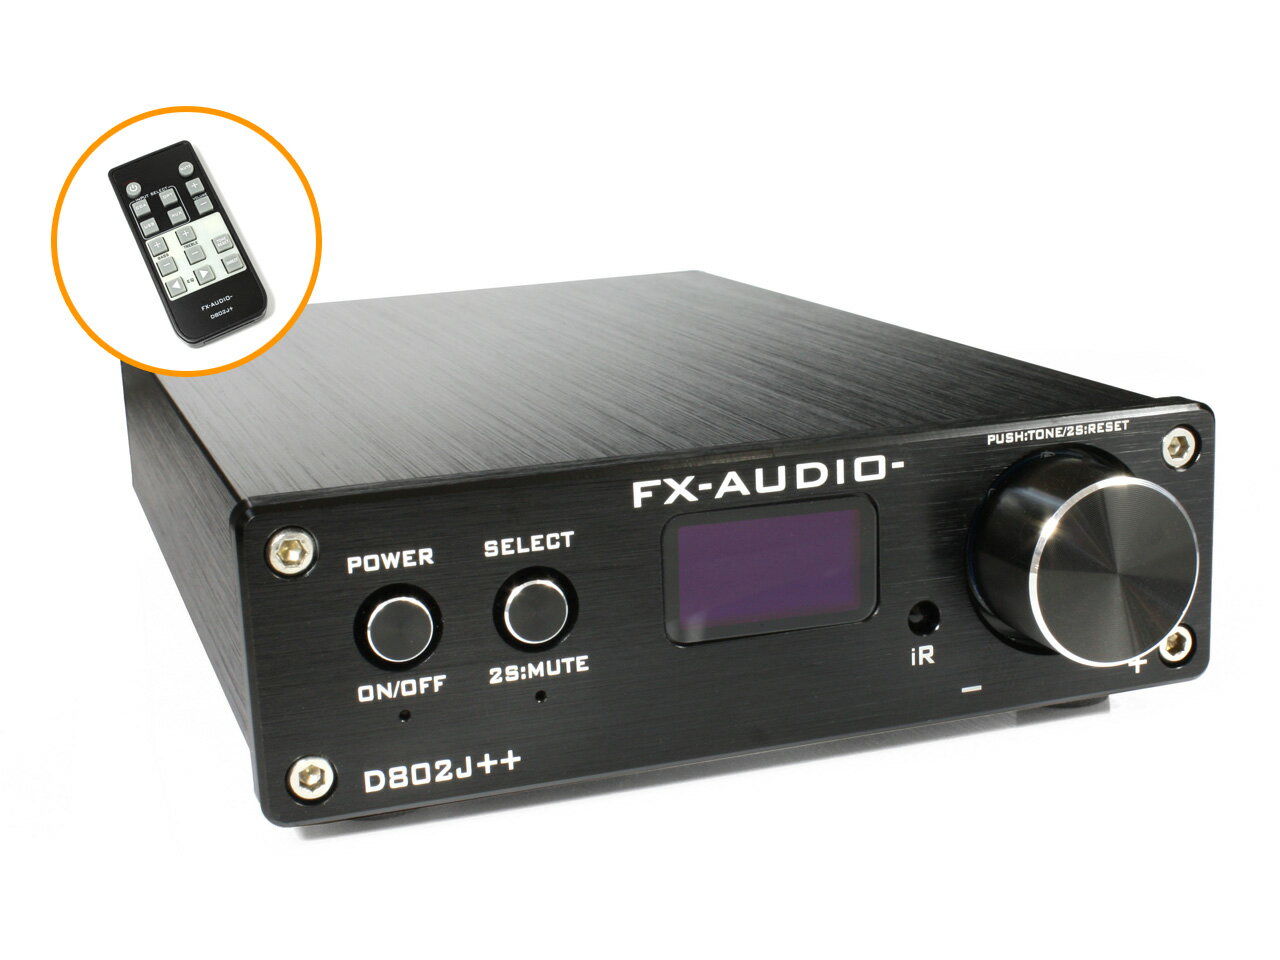 送料無料 FX-AUDIO- D802J++ [ブラック] 